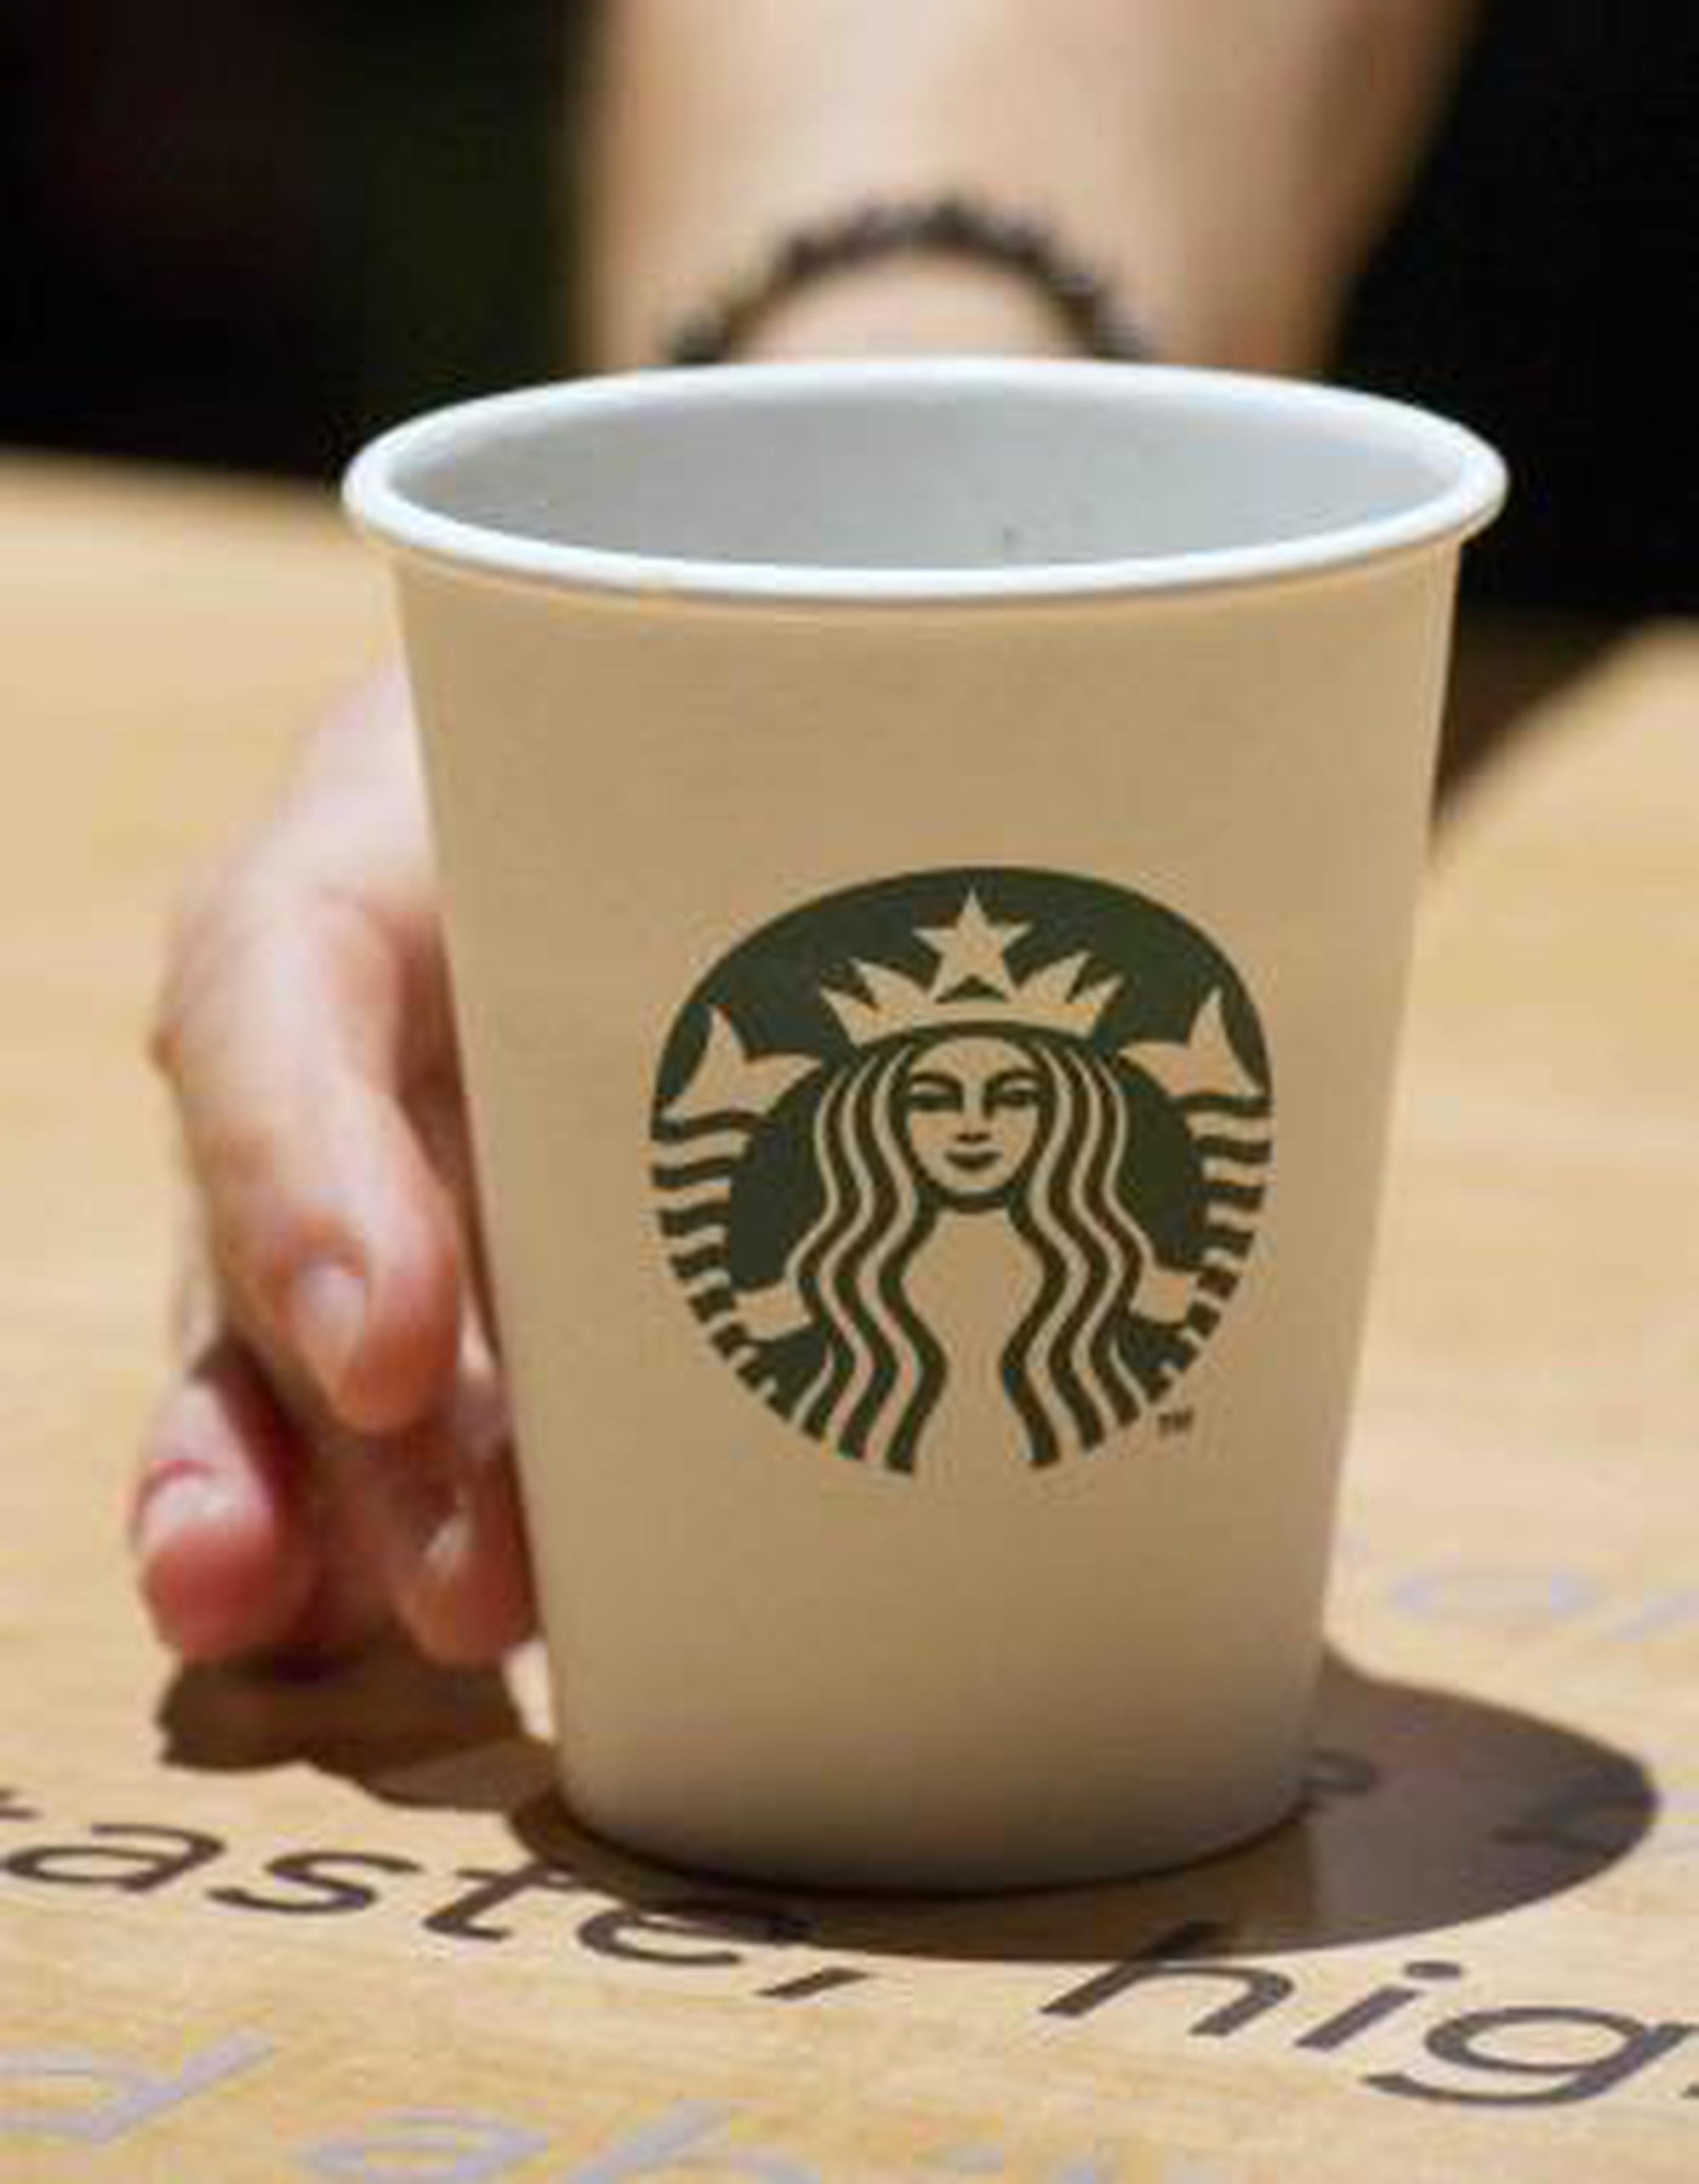 Starbucks nació en 1971 y tiene más de 29,000 tiendas en todo el mundo. (Archivo)